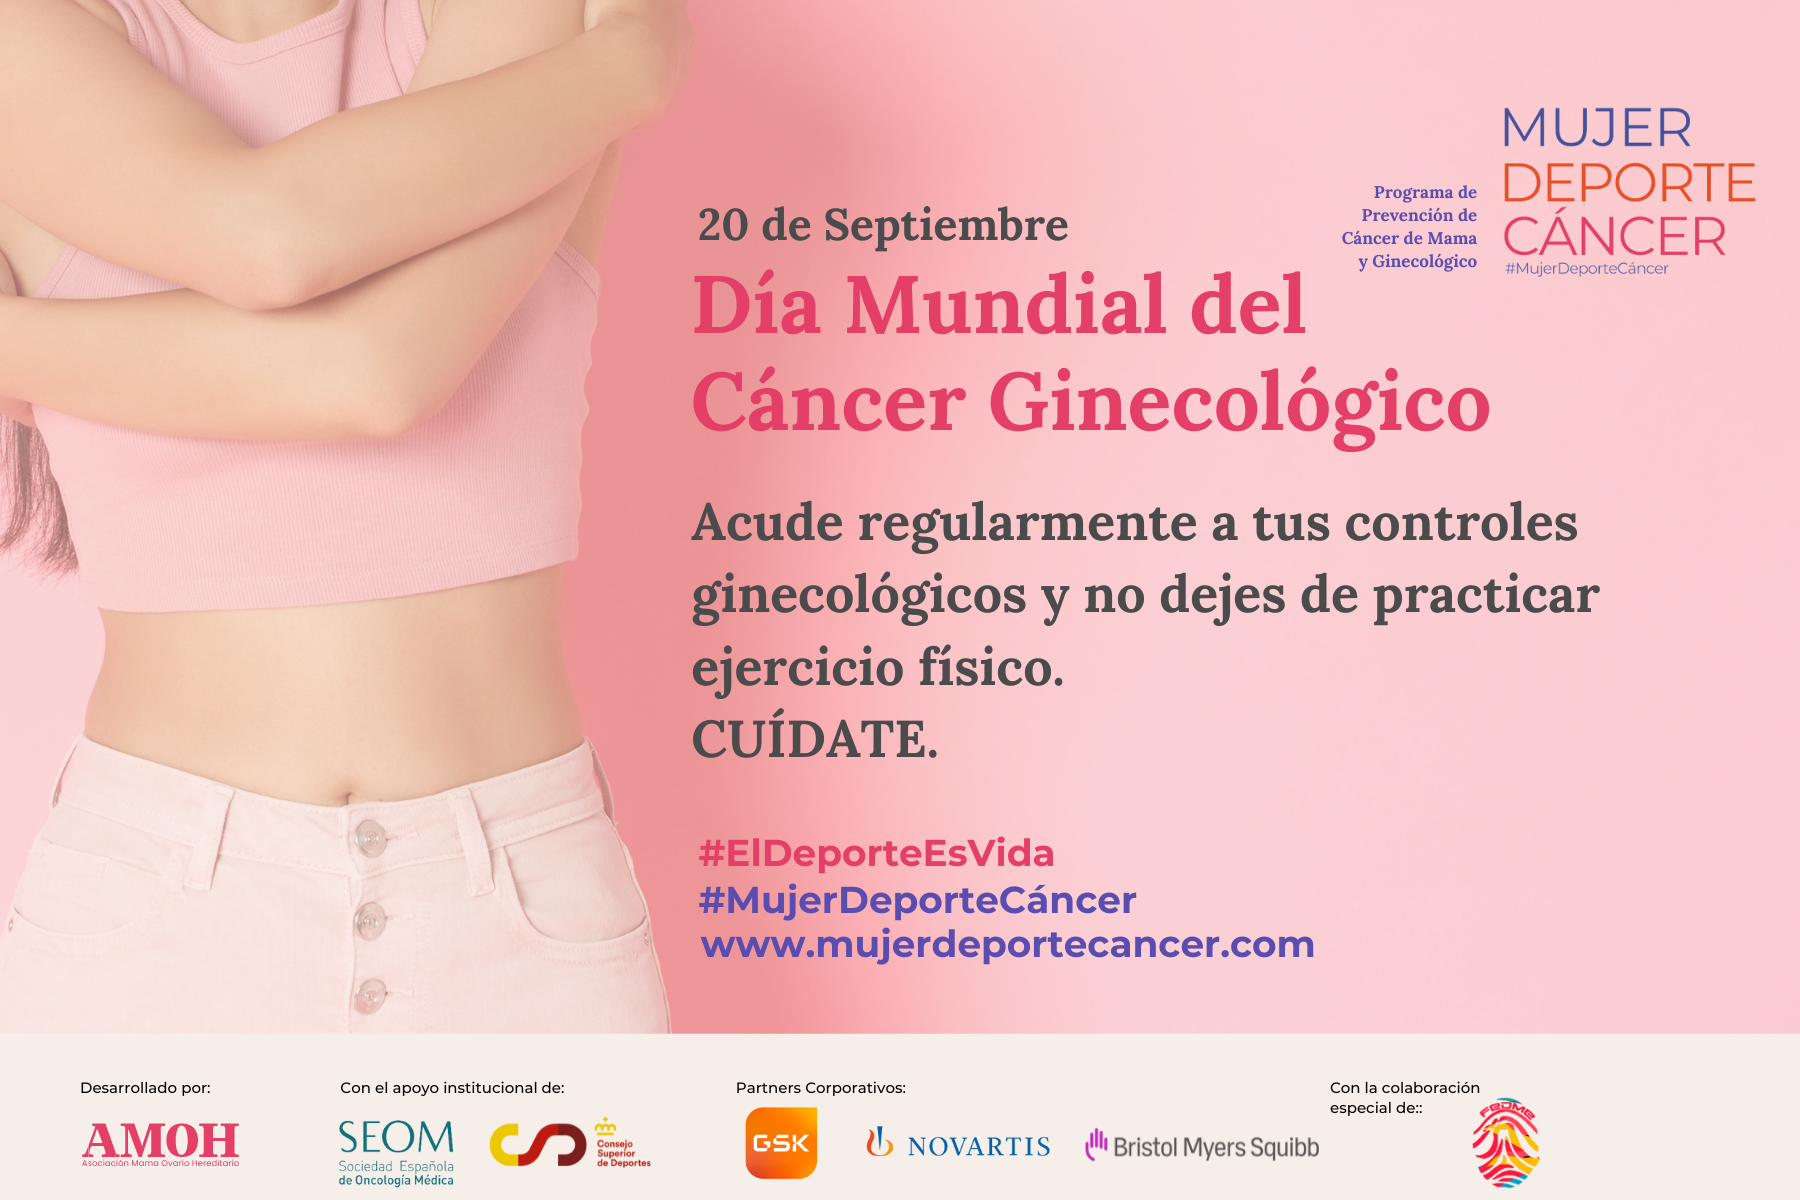 Cartel de la campaña Dia Mundial del Cancer Ginecológico